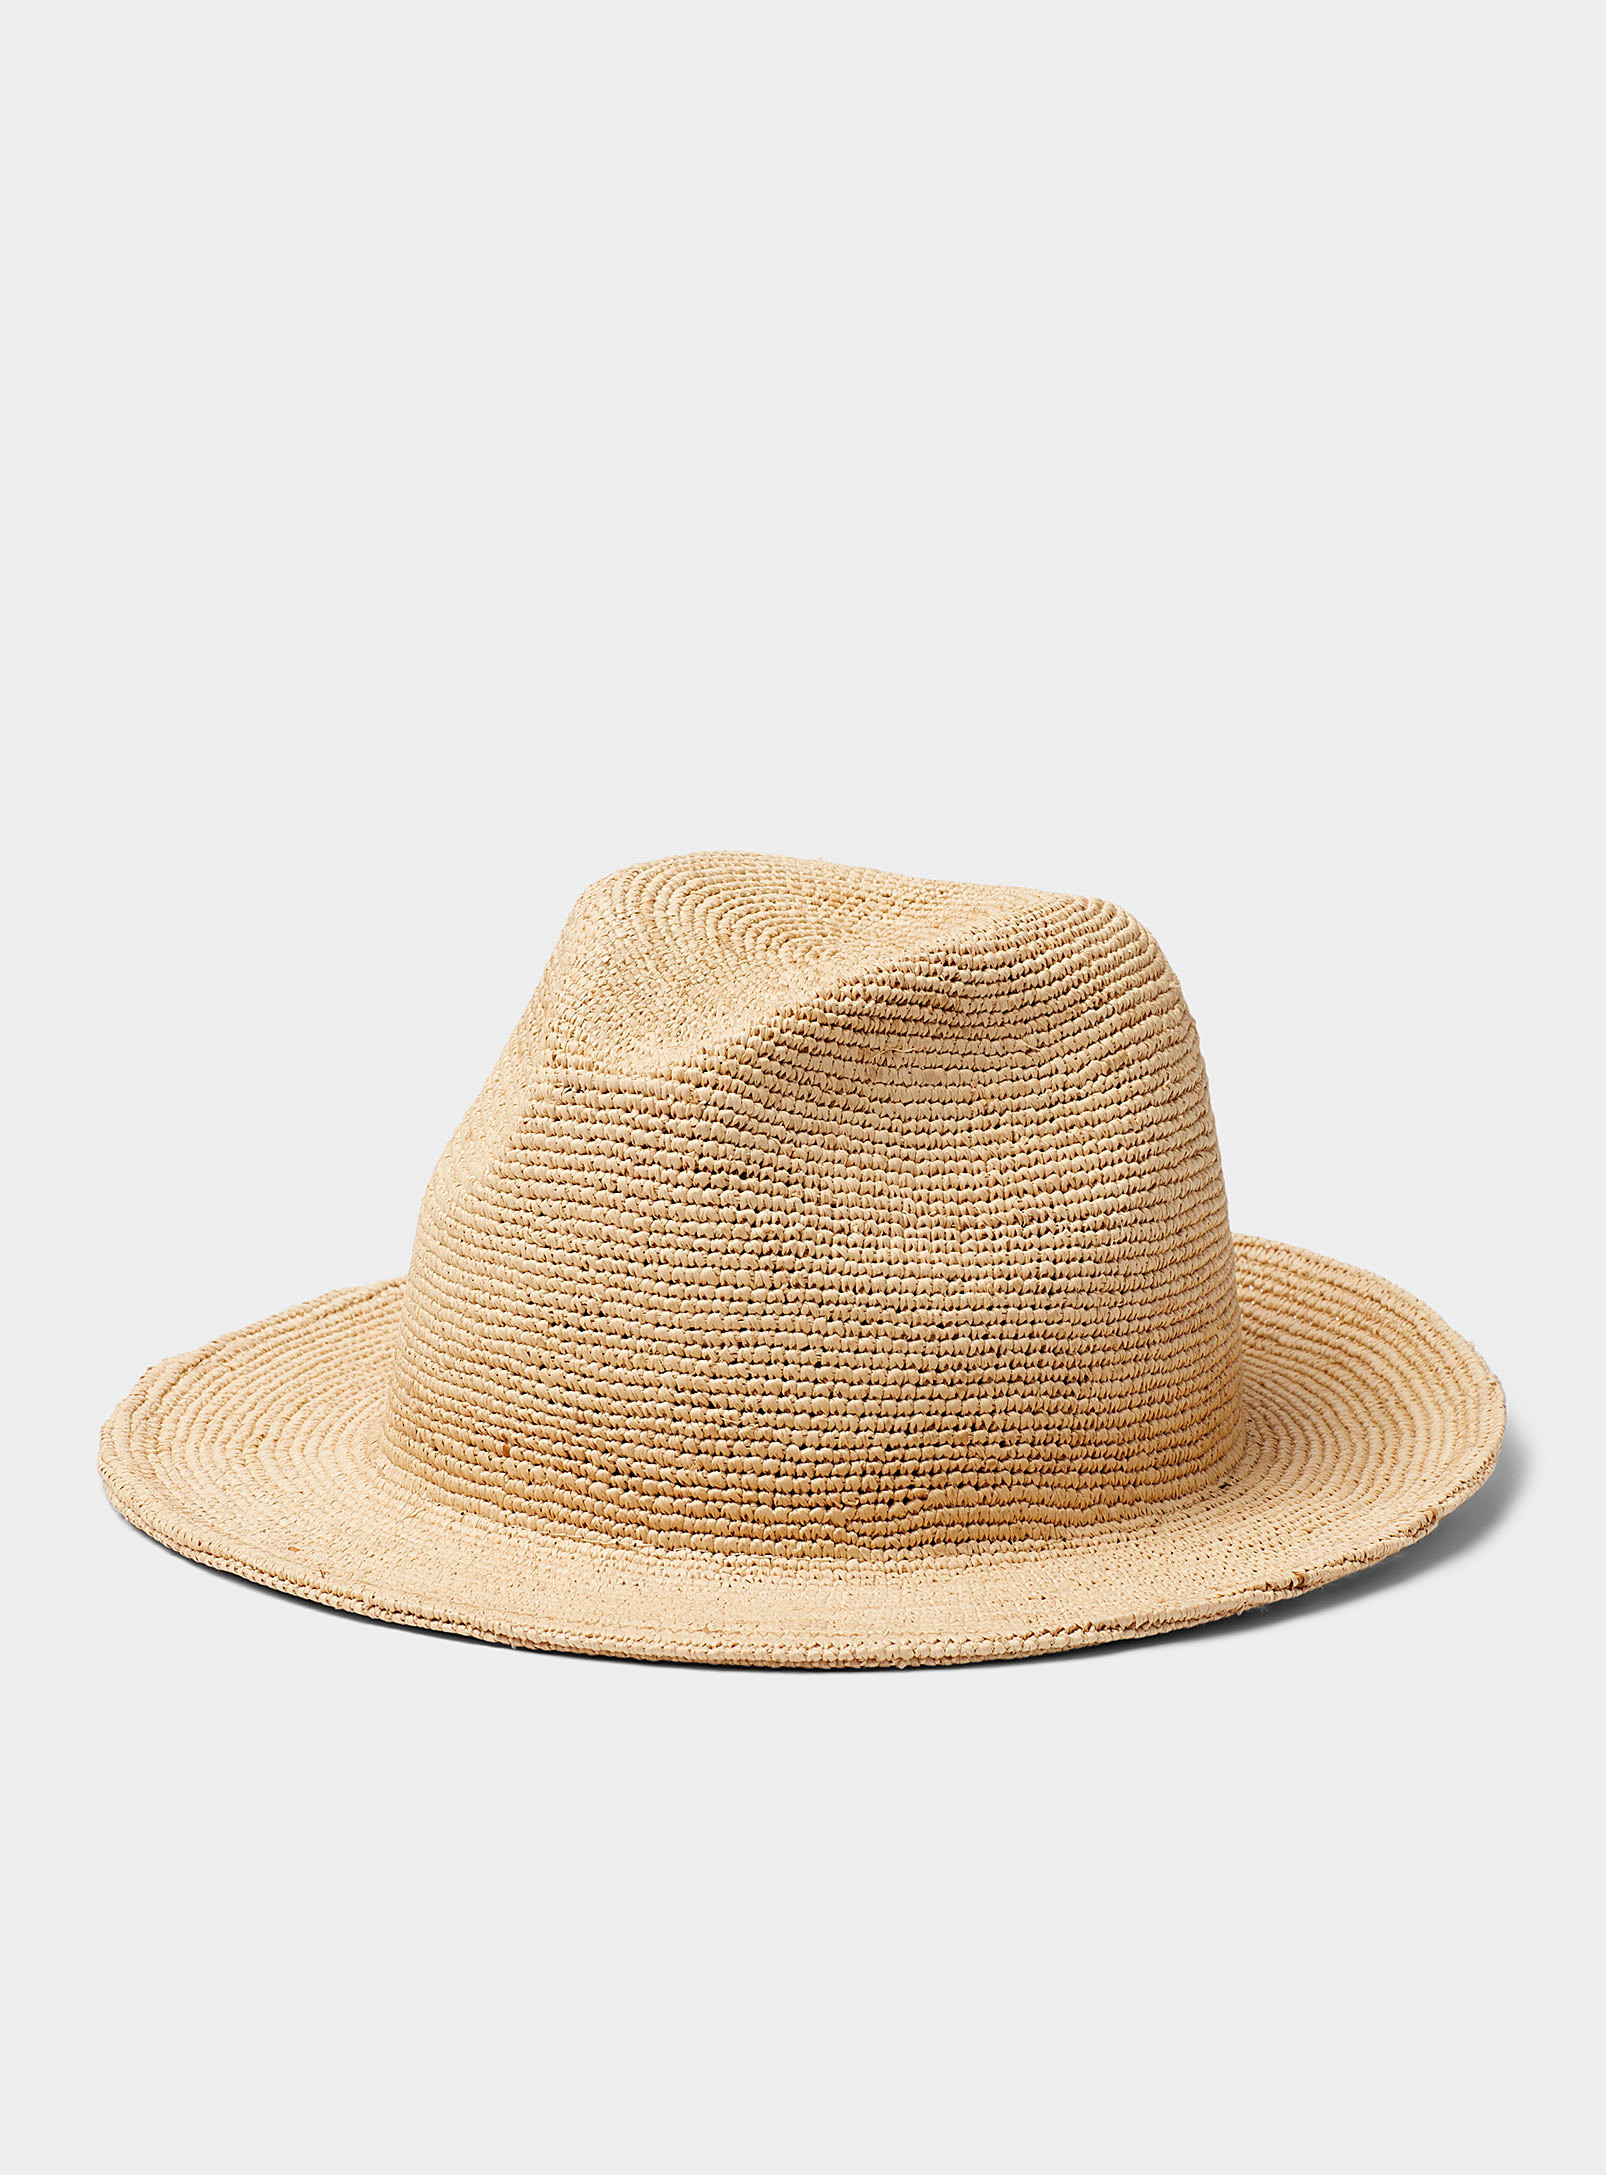 Simons - Women's Natural straw Fedora Hat